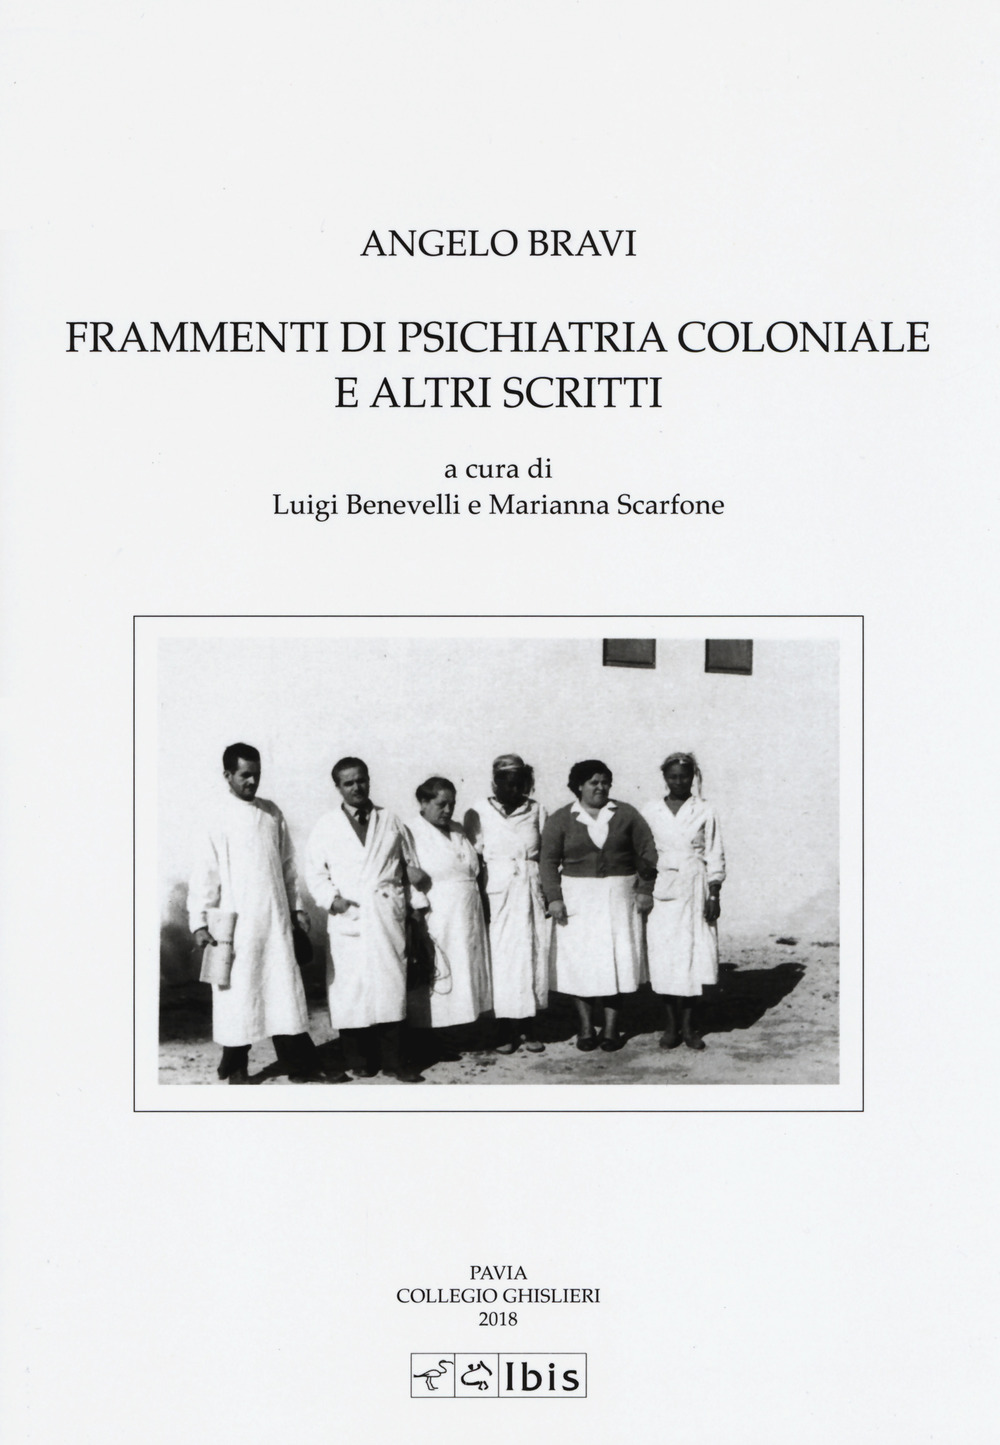 Image of Frammenti di psichiatria coloniale e altri scritti